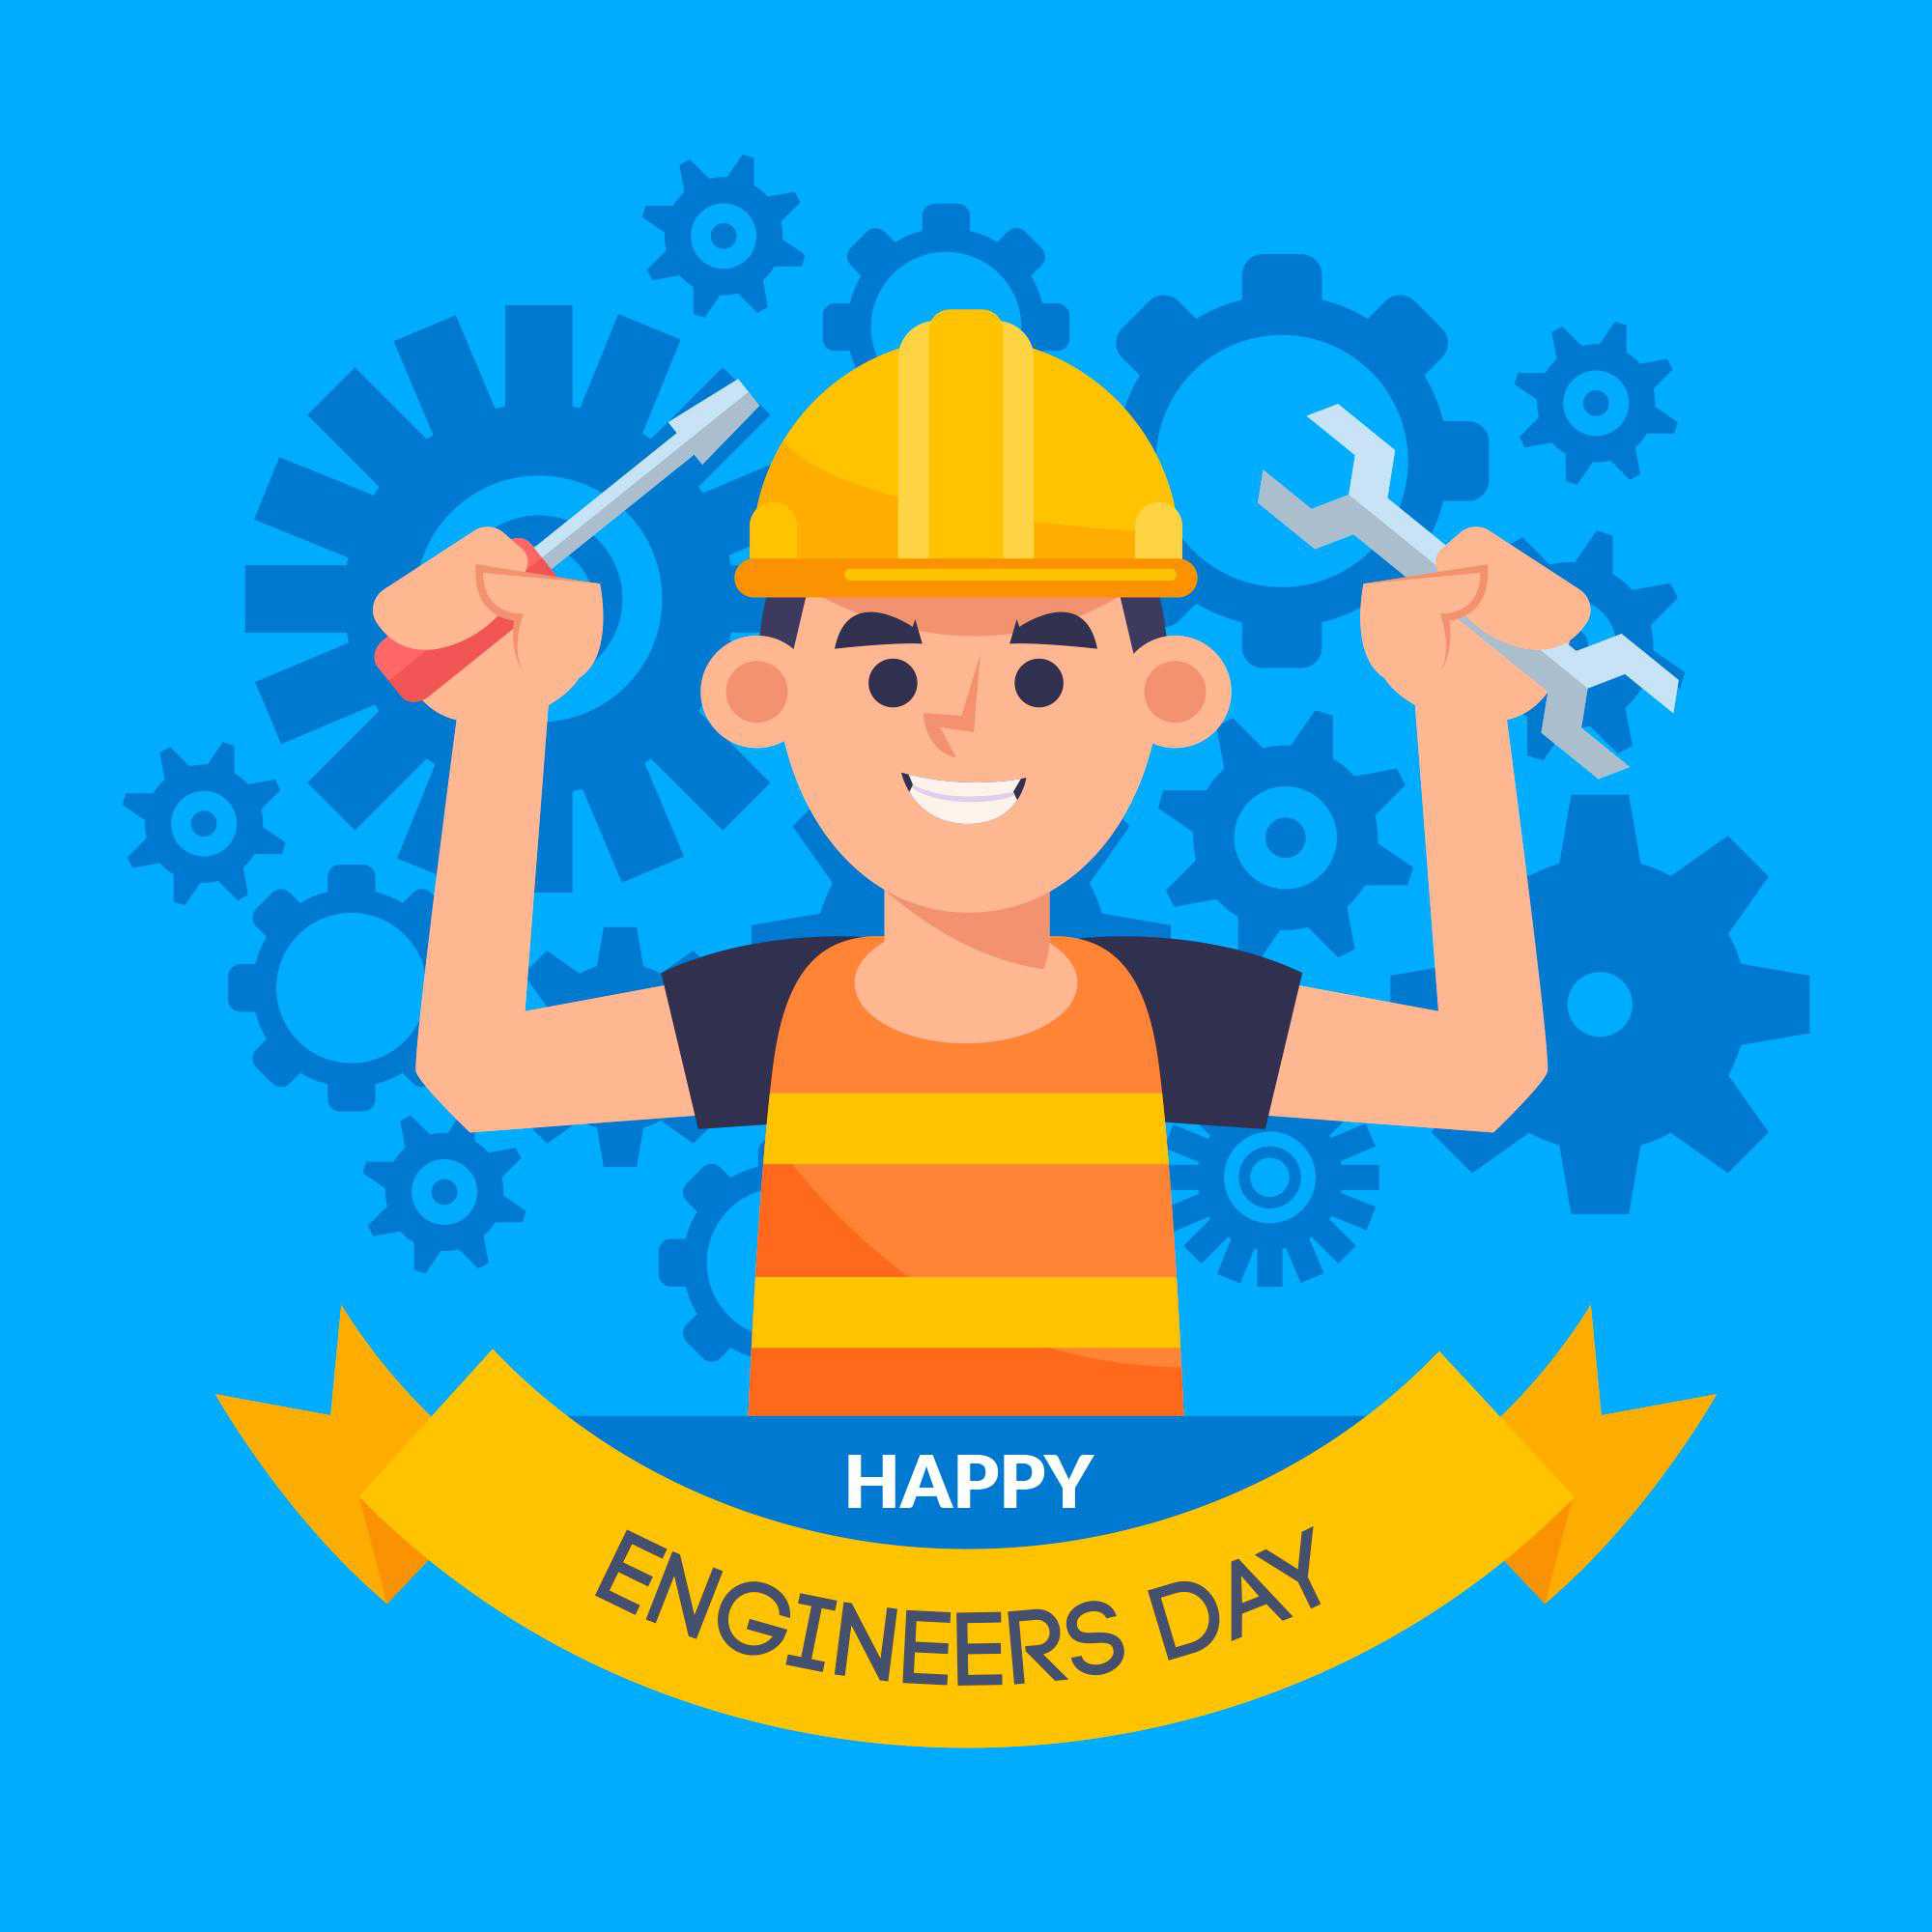 Happy Engineer's Day wallpaper